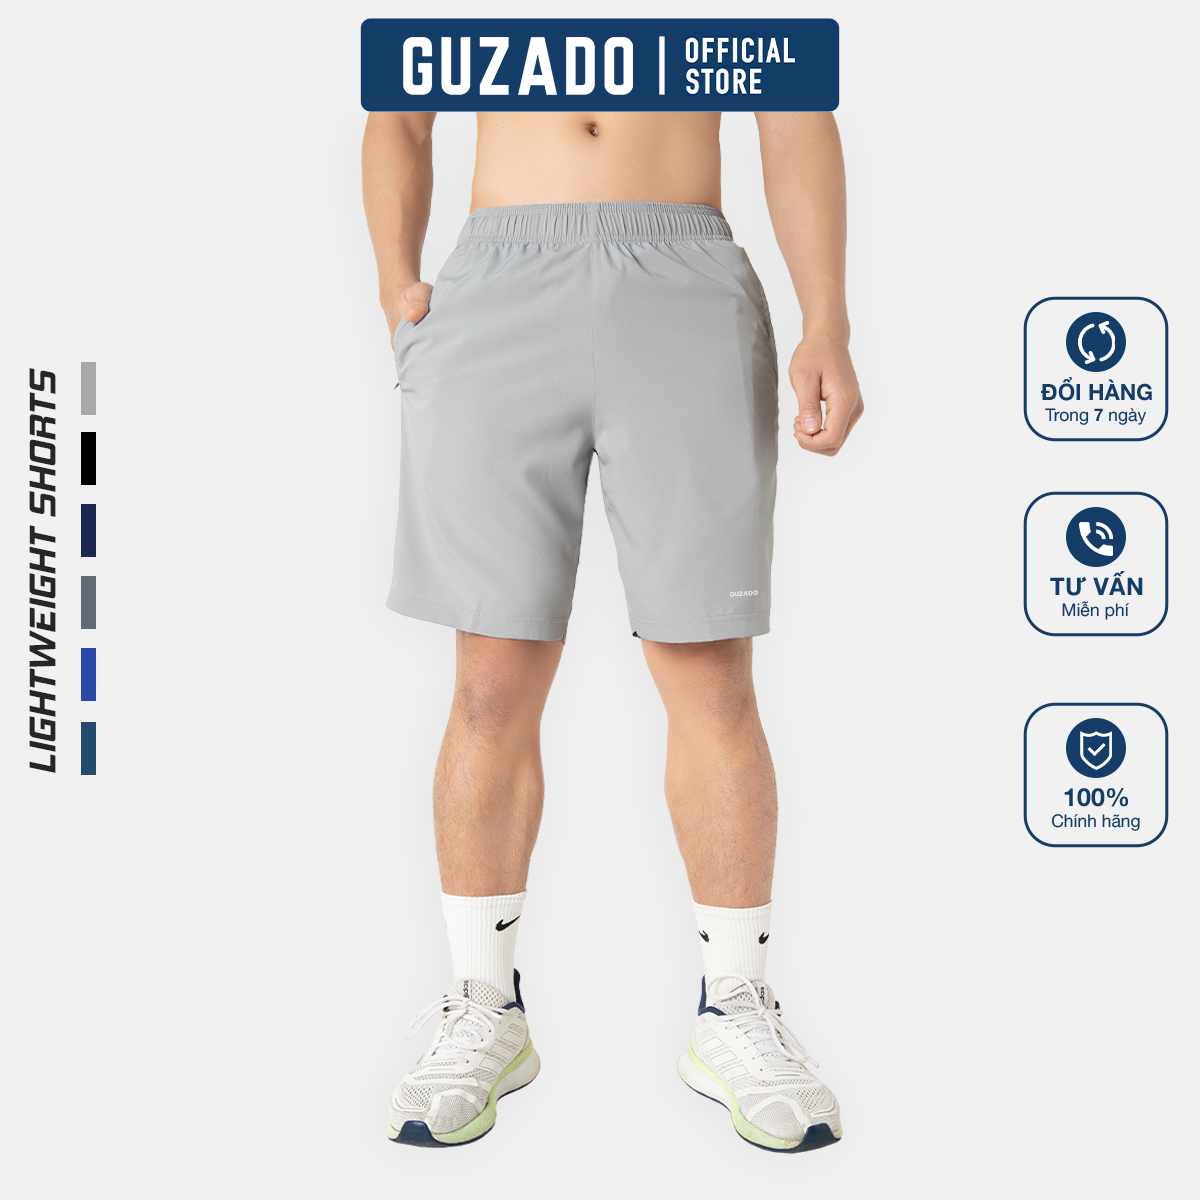 Quần Đùi nam Guzado GSR01 vải gió thể thao siêu nhẹ, co giãn thoải mái phù hợp chạy bộ, chơi tennis, mặc ở nhà